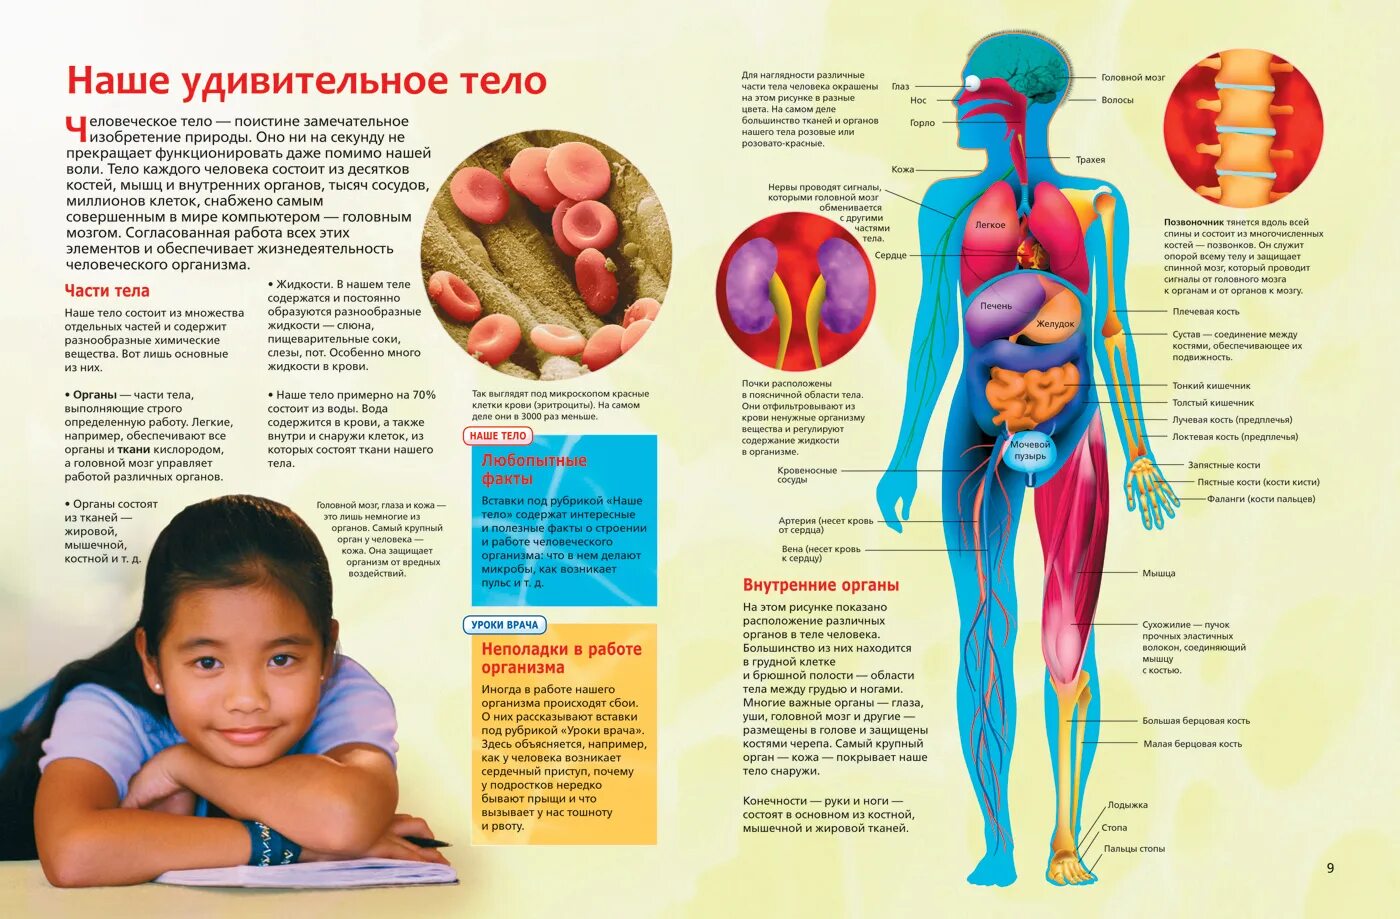 Интересные сведения о человеческом теле. Анатомия человека. Интересные факты об органах человека. Анатомия человека для детей. Факты систем органов человека